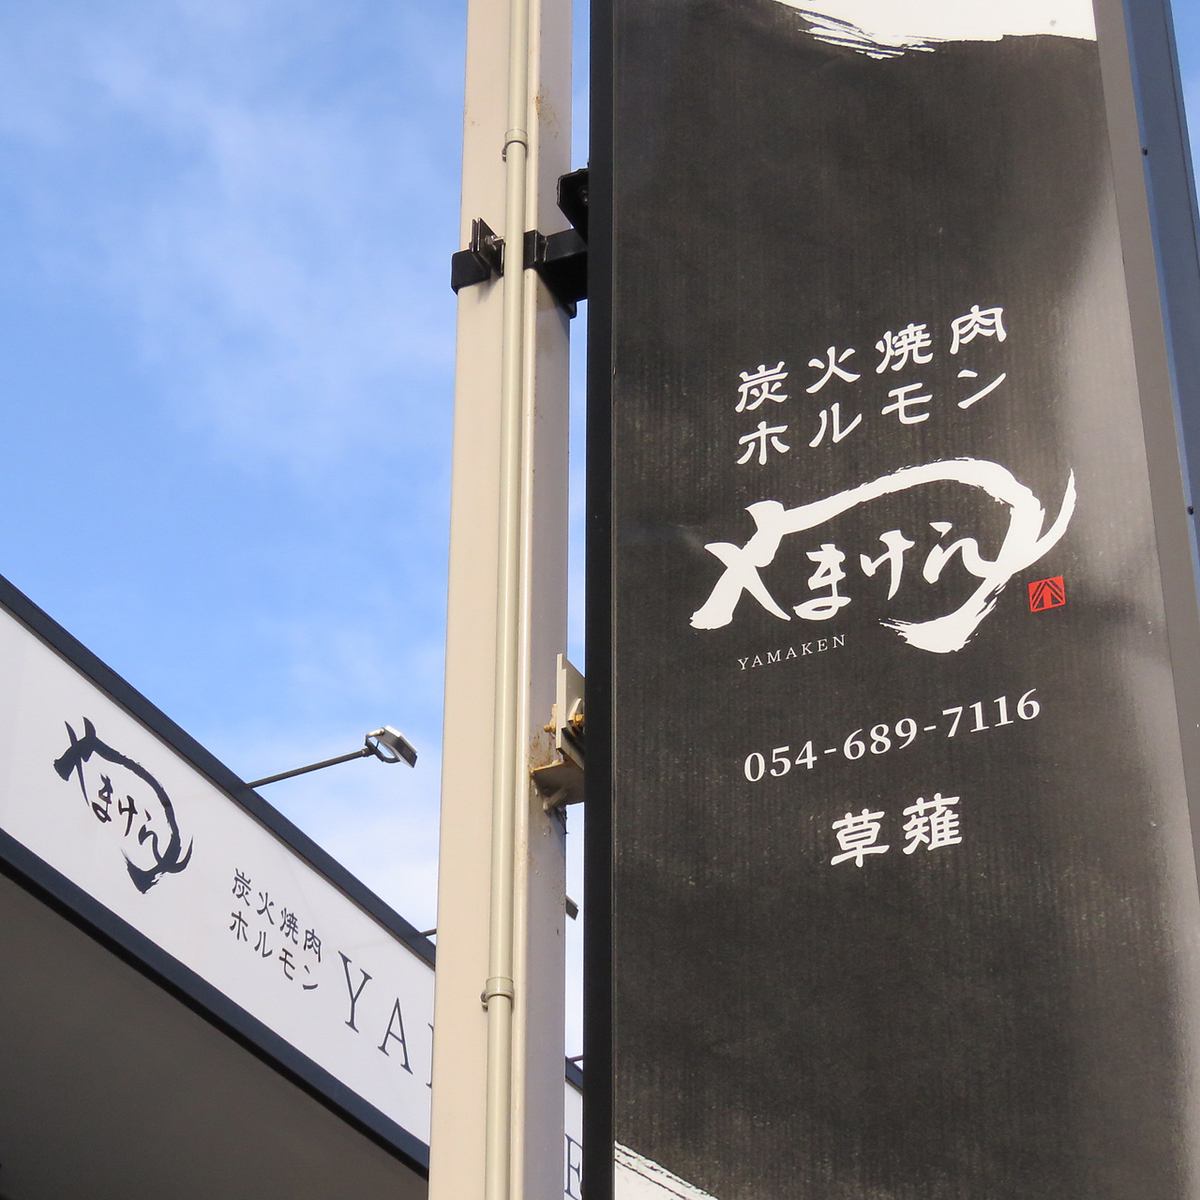 人氣商店 Yamaken 在草薙新開張！！